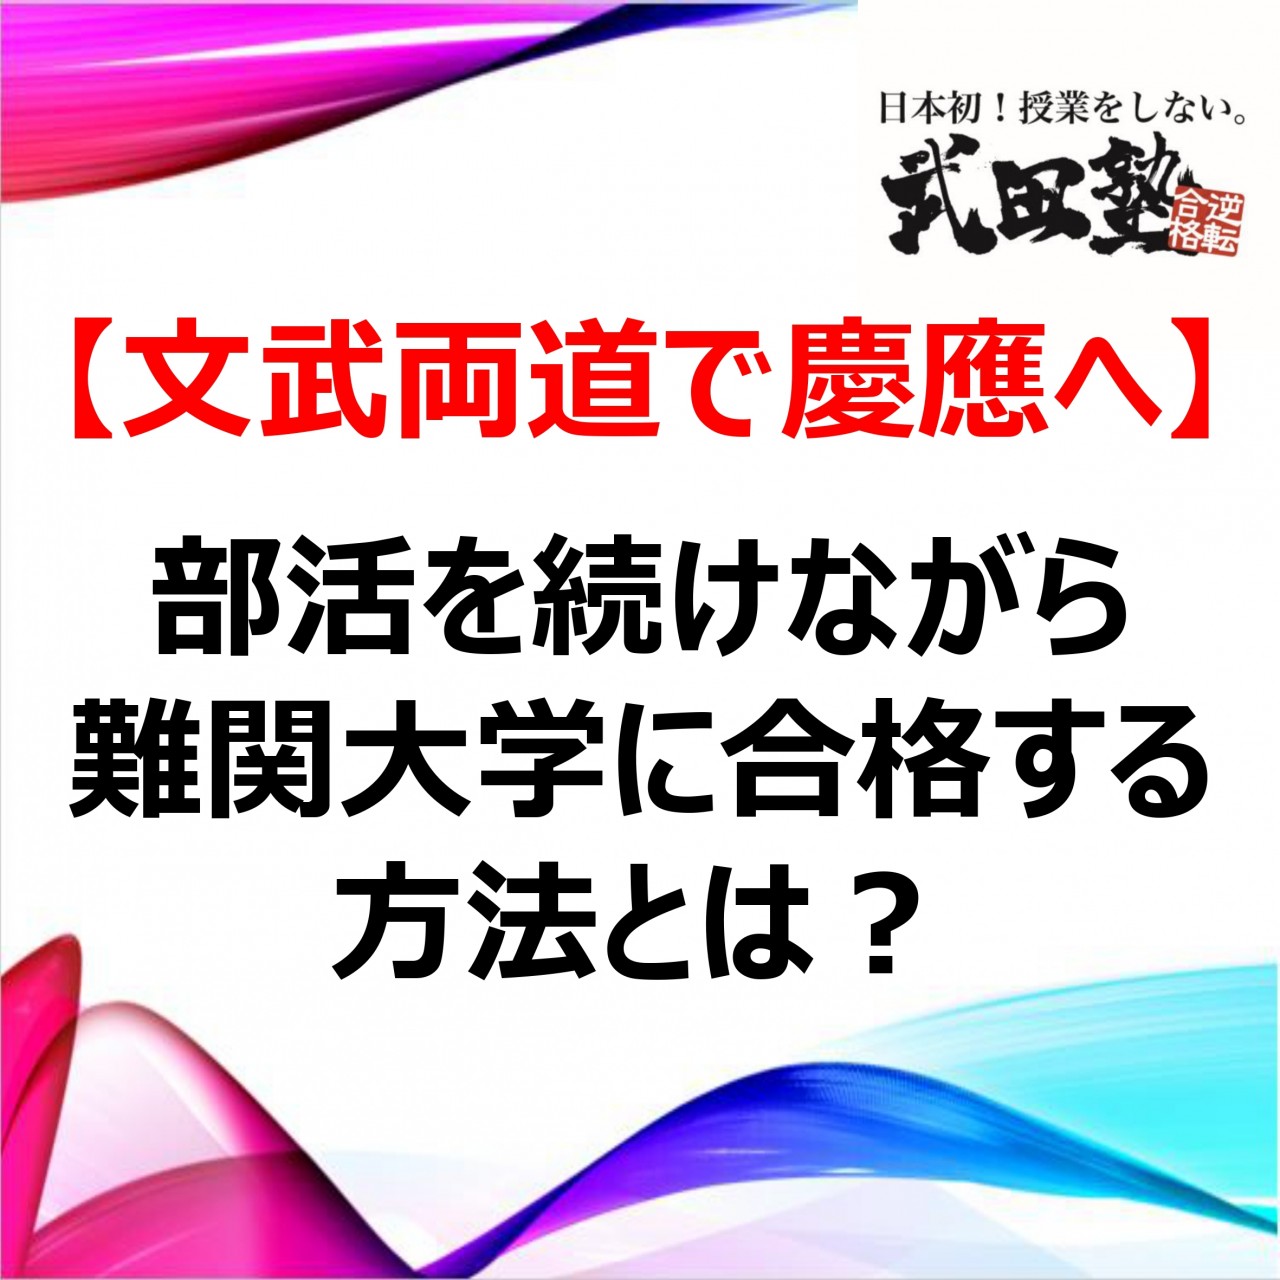 【文武両道で慶應へ】部活を続けながら難関大学に合格する方法とは？